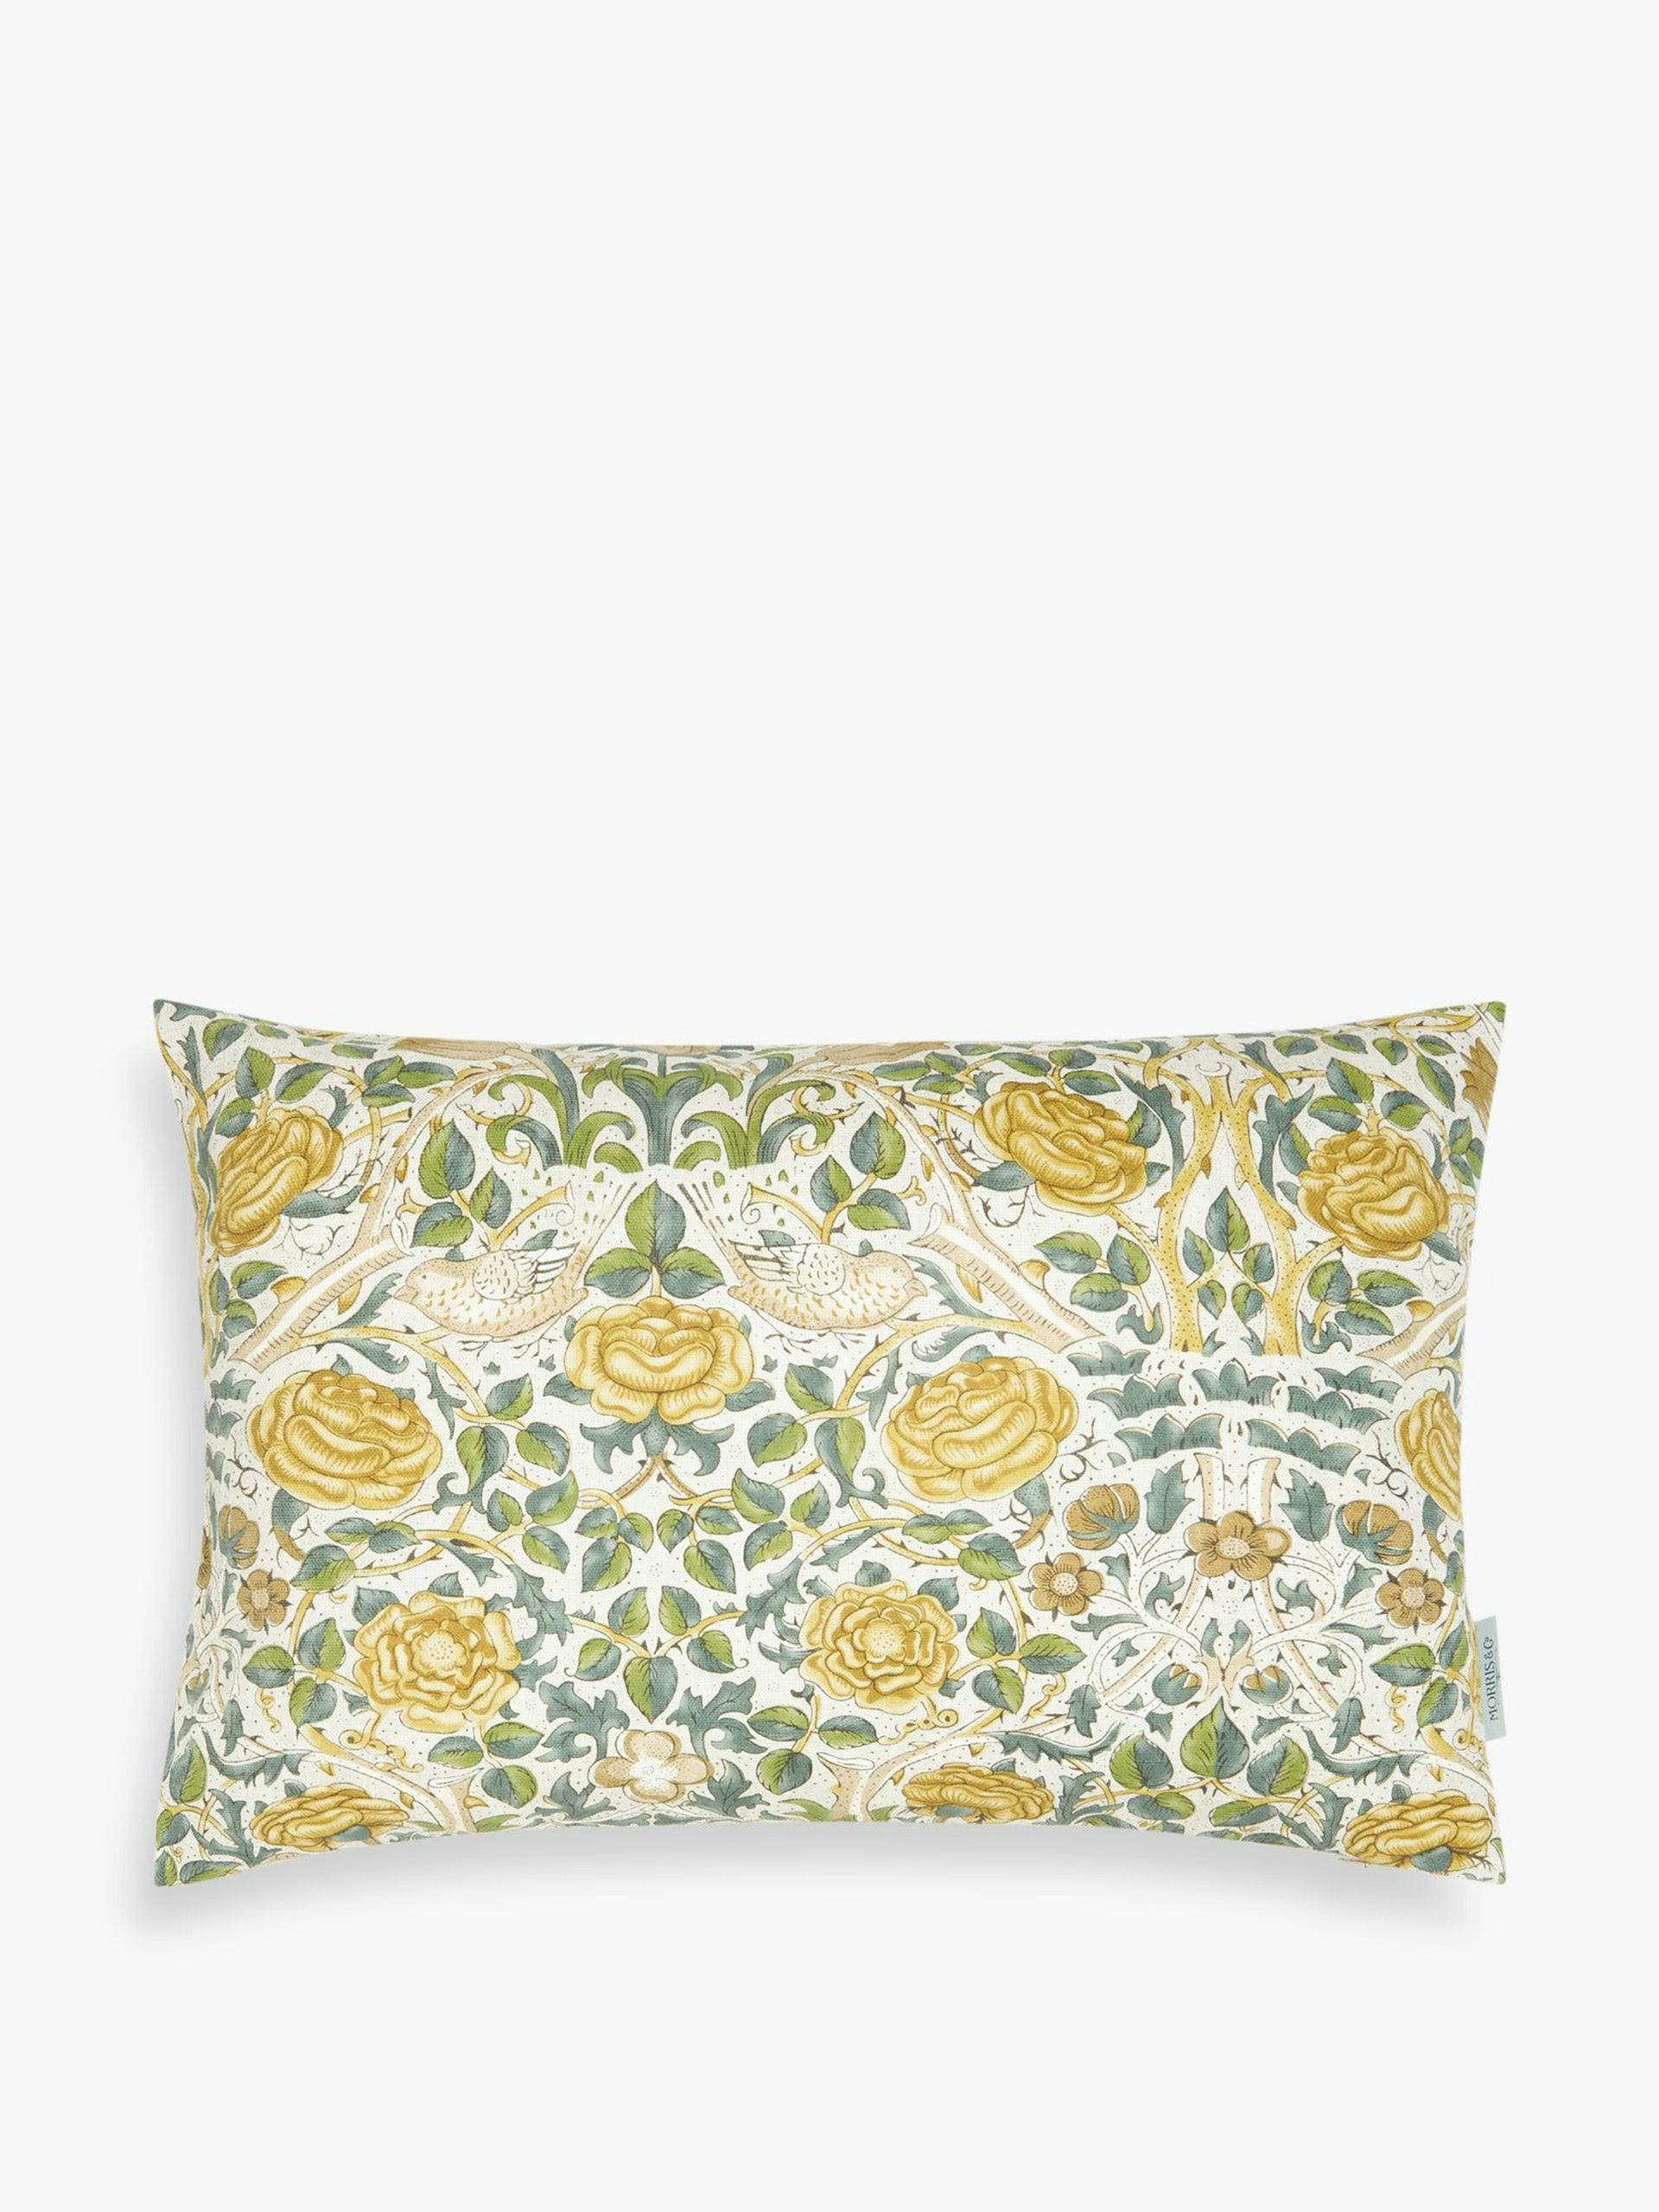 Rose cushion in Weld/Leaf Green